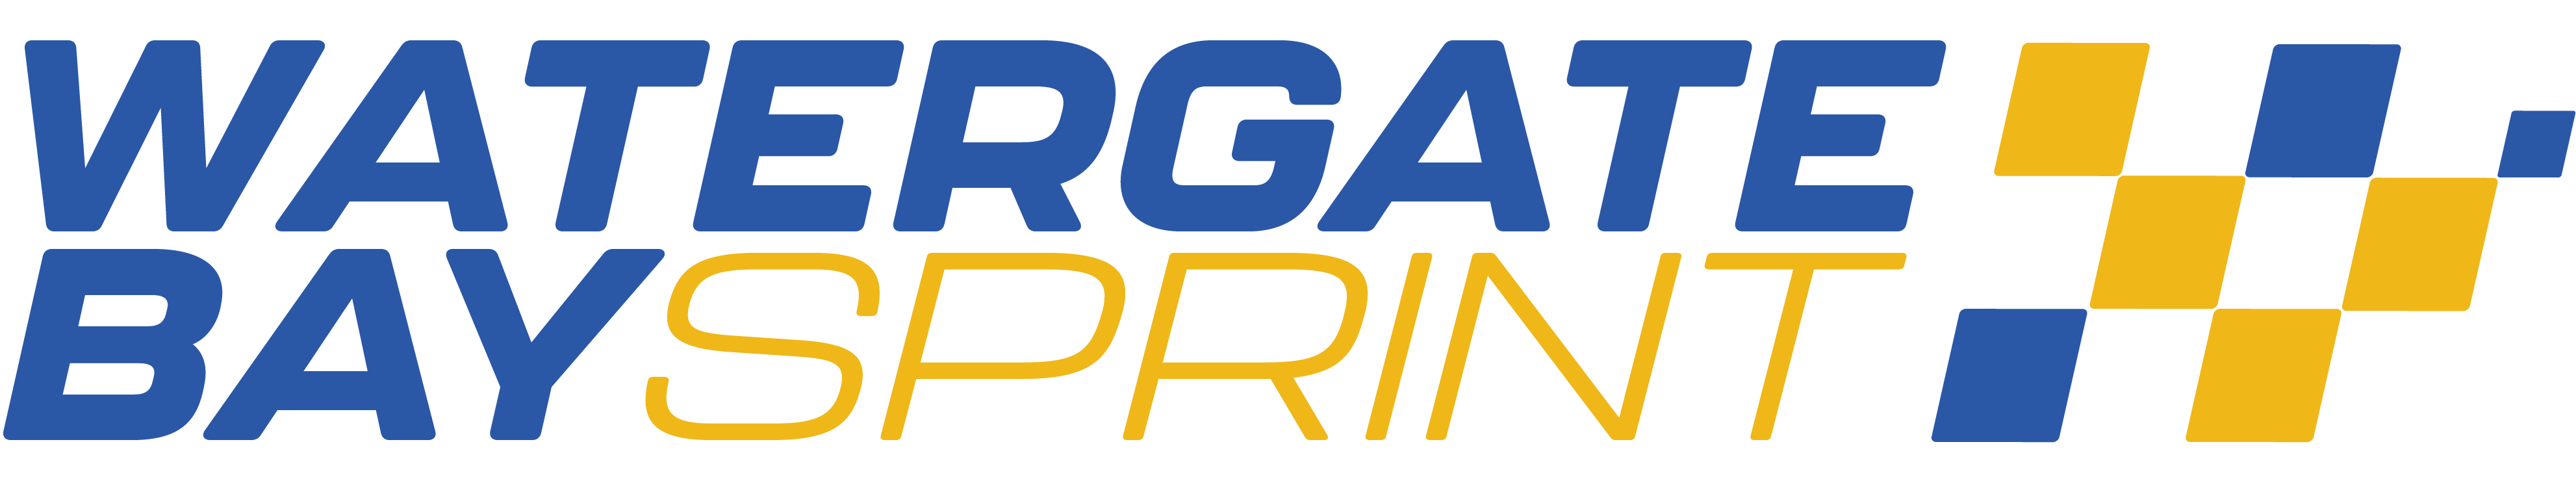 Watergate Bay Motorsport - Watergate Bay Sprint